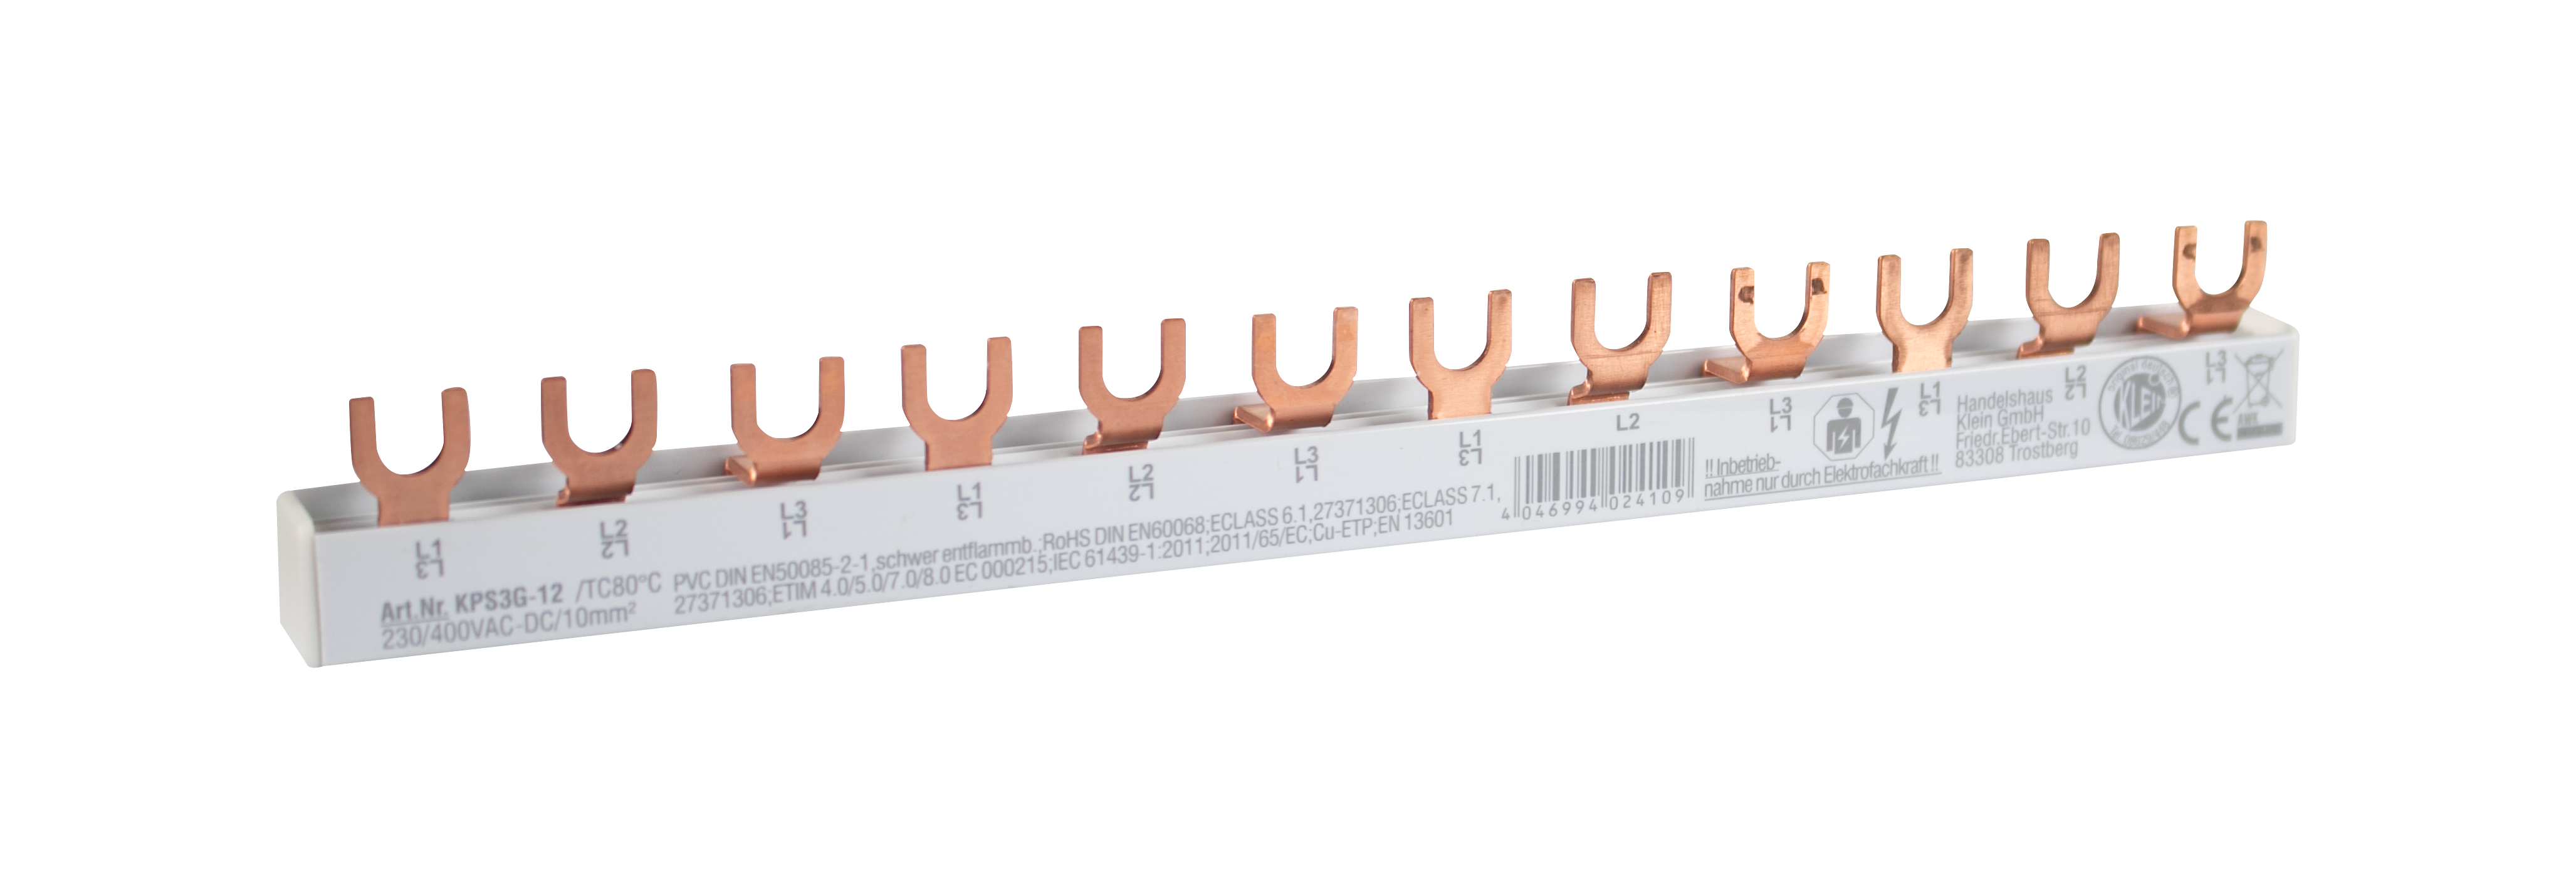 4-Phasen Stiftschiene, L-Ausführung, geschlossen, 3 x 4 Pole, 216 mm lang, Modulbreite: 17,80 mm